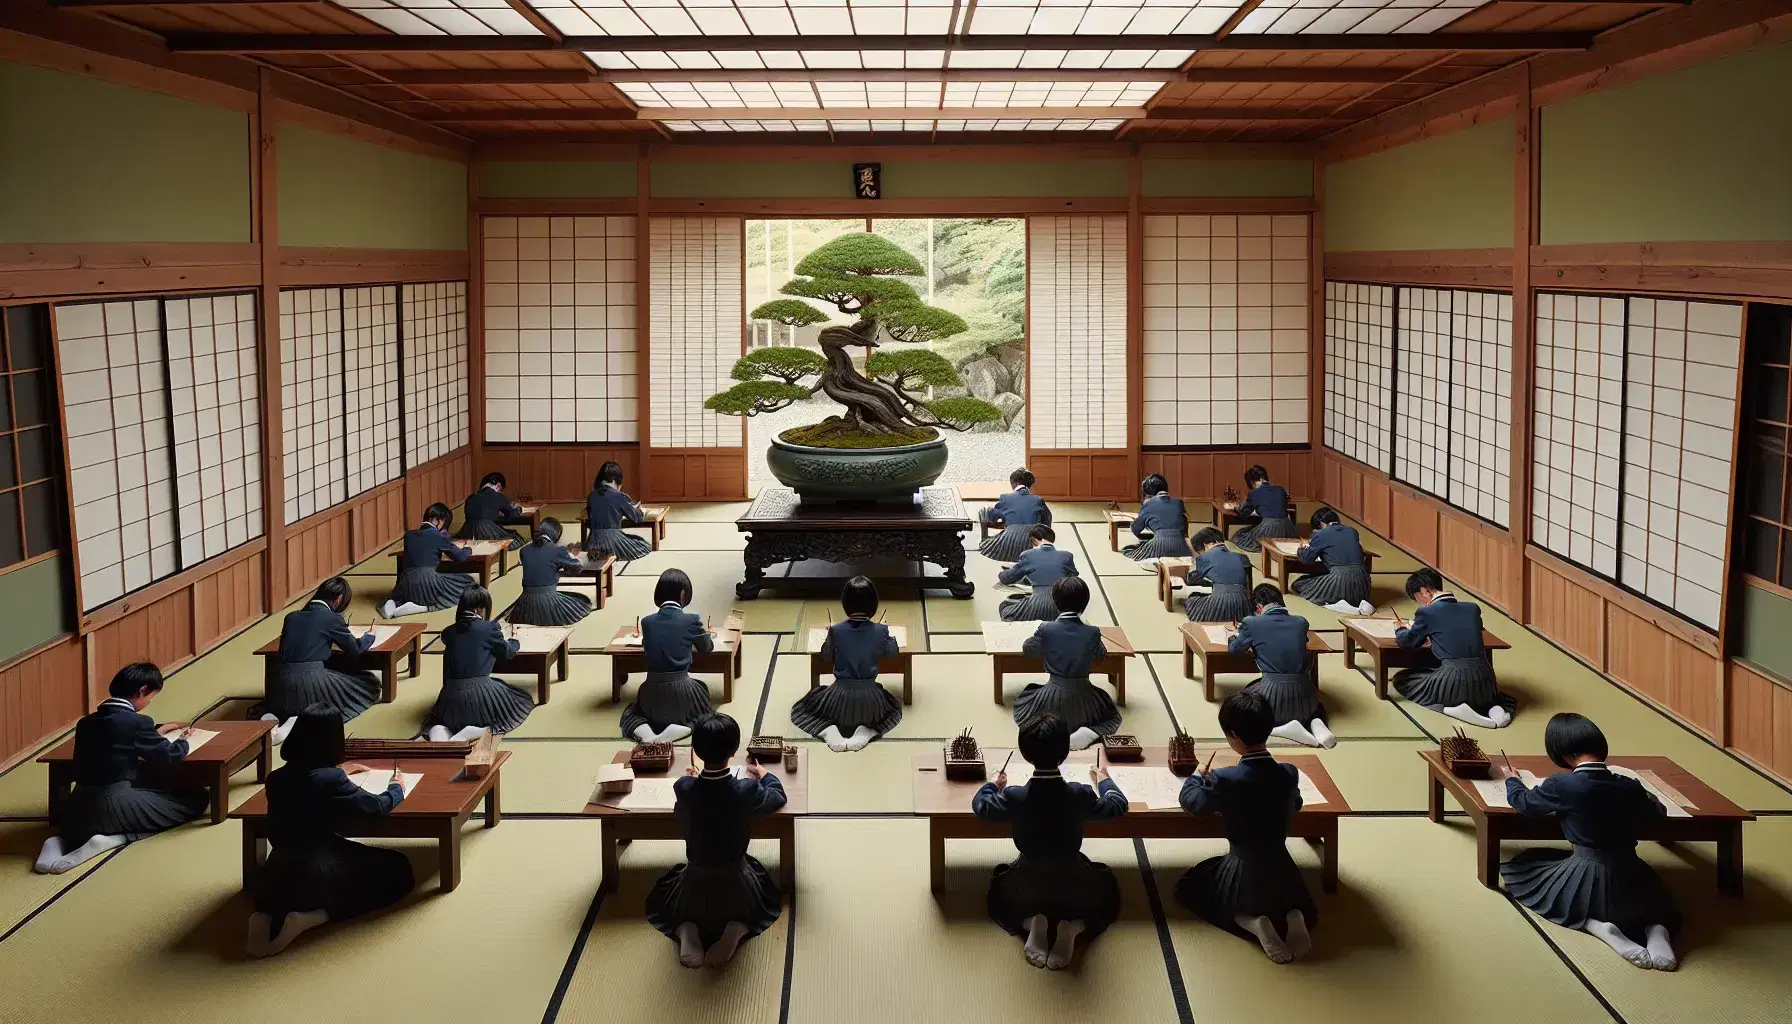 Aula japonesa tradicional con estudiantes en uniforme escolar trabajando en mesas bajas sobre tatami, bonsái al frente y jardín con koi visible a través de la ventana.